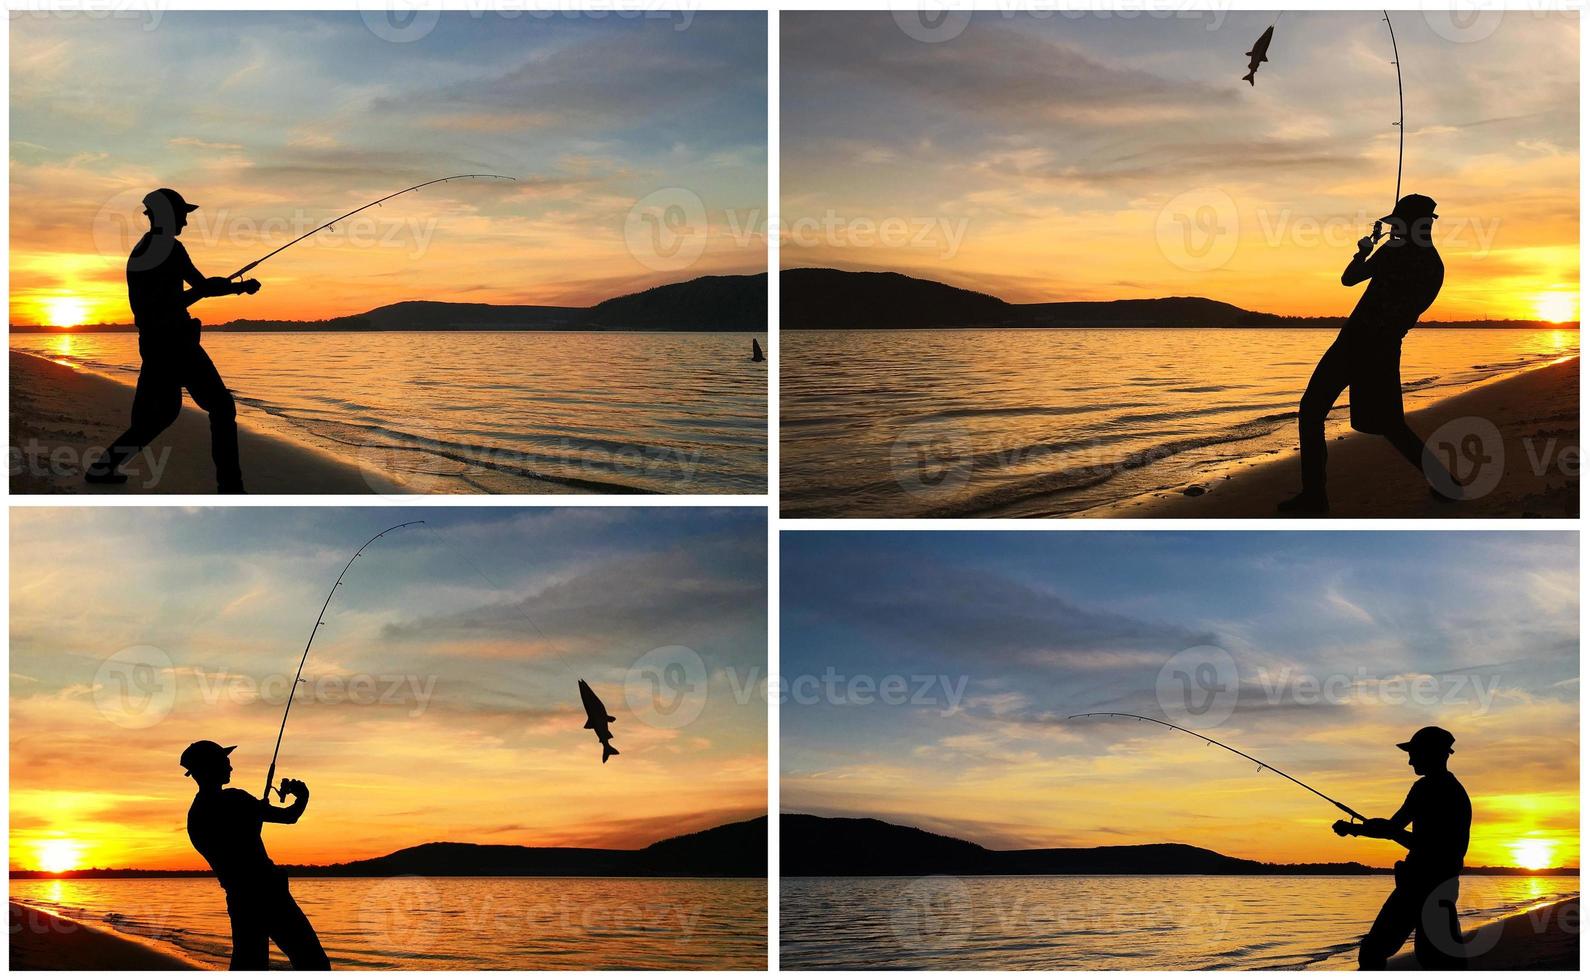 silueta de un hombre pescando al atardecer - foto de conjunto de collage